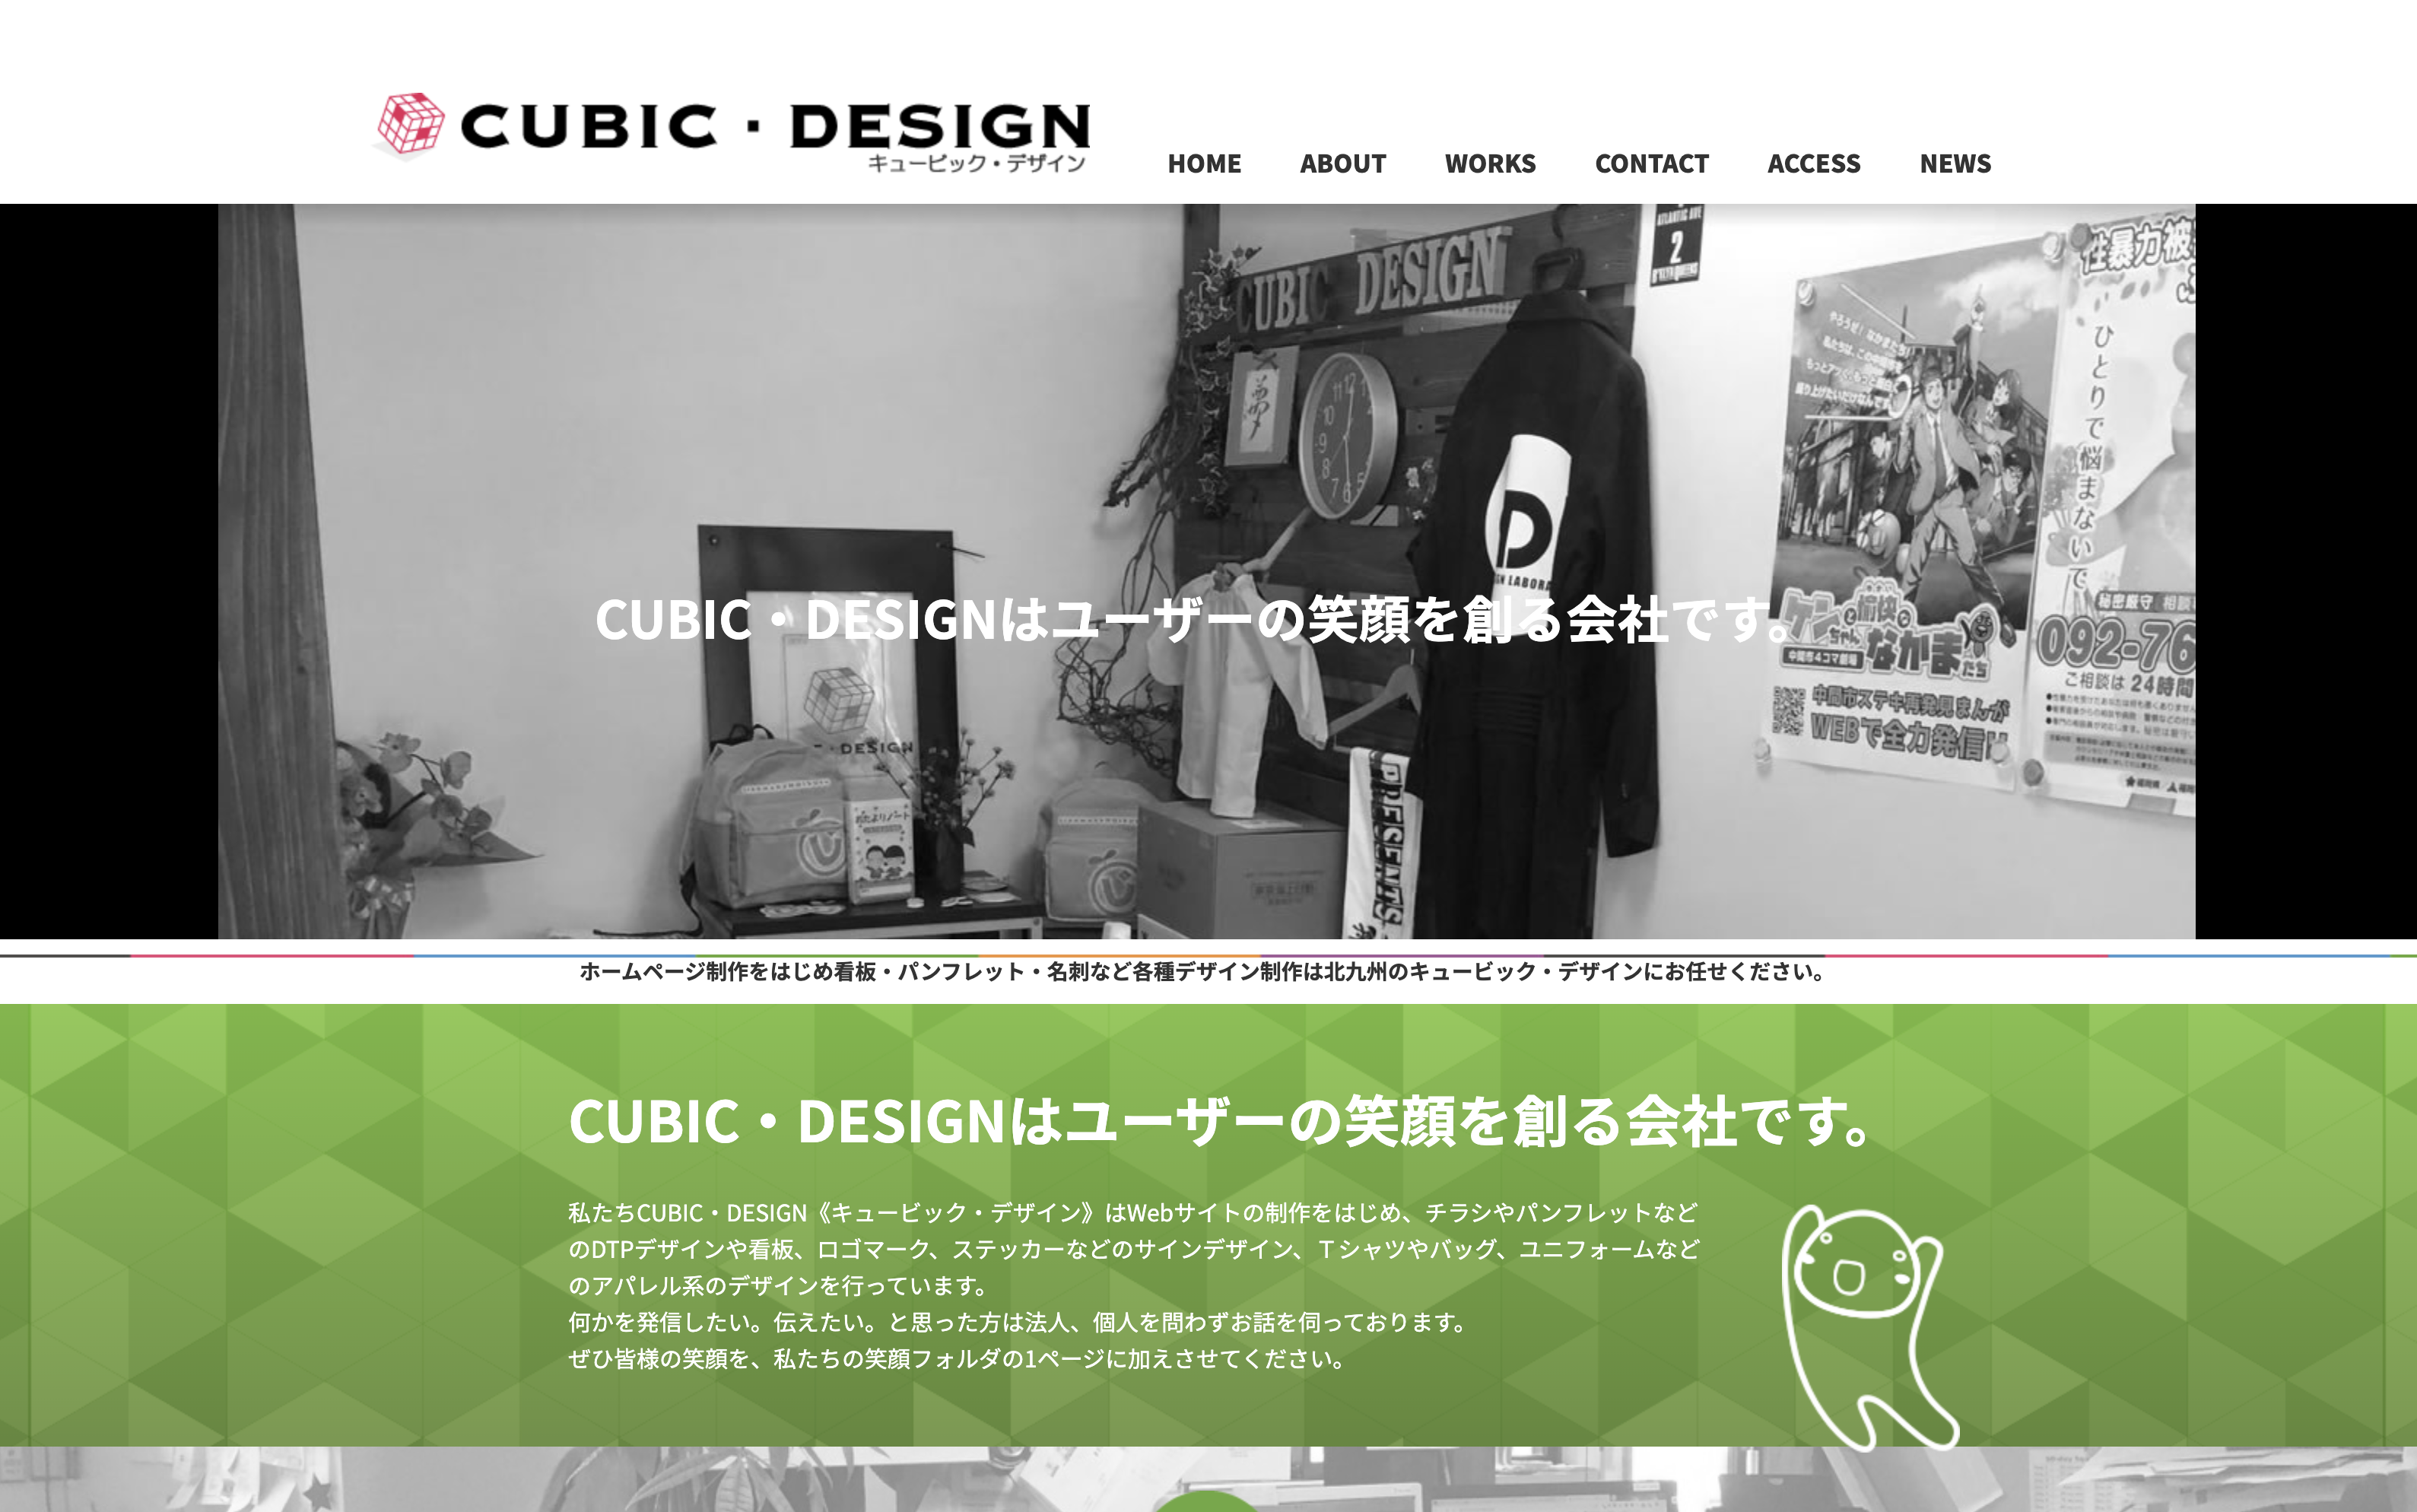 有限会社キュービック・デザインの有限会社キュービック・デザイン:デザイン制作サービス